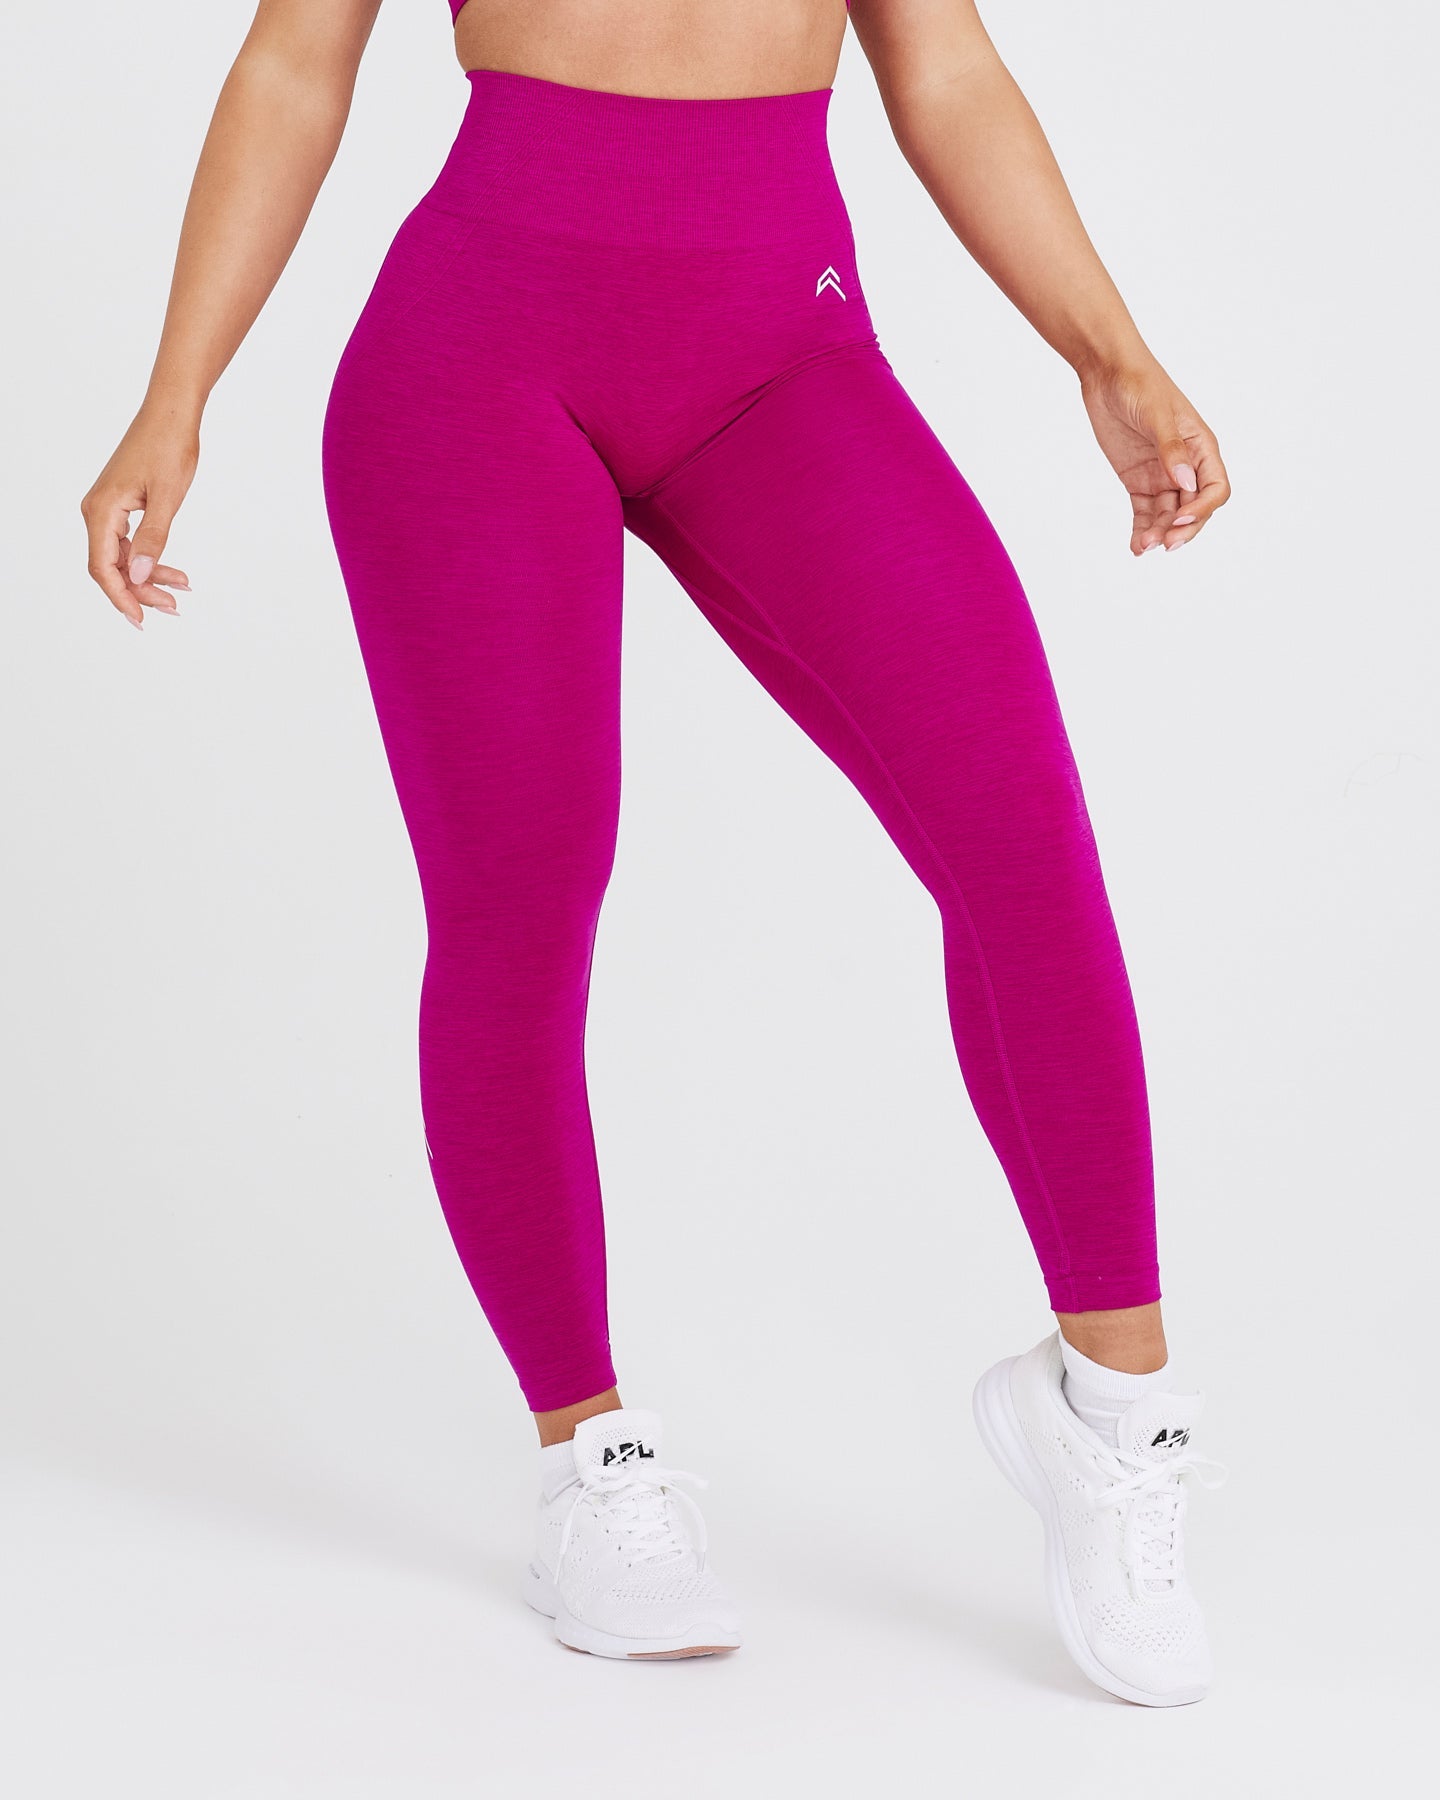 Ladies Pink luxury gym leggings, Women's Cute fitness leggings